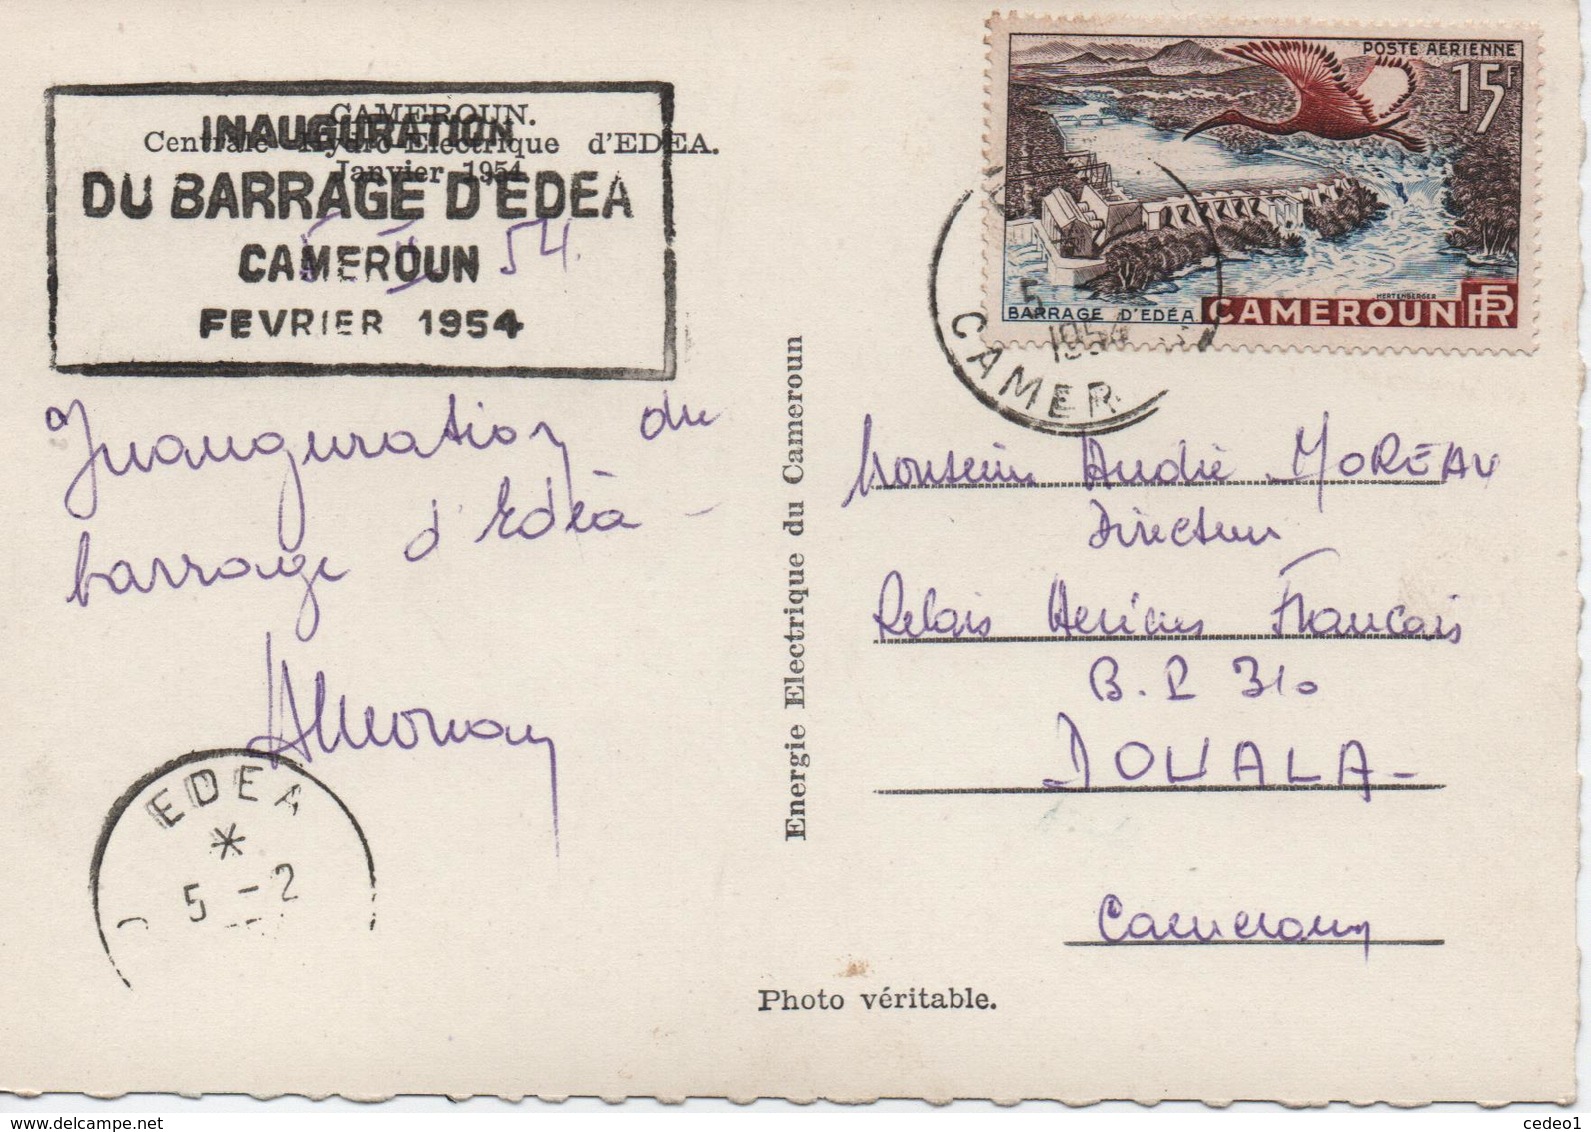 CAMEROUN  INAUGURATION DU BARRAGE D'EDEA  FEVRIER 1954   VOIR LES SCAN - Cameroun